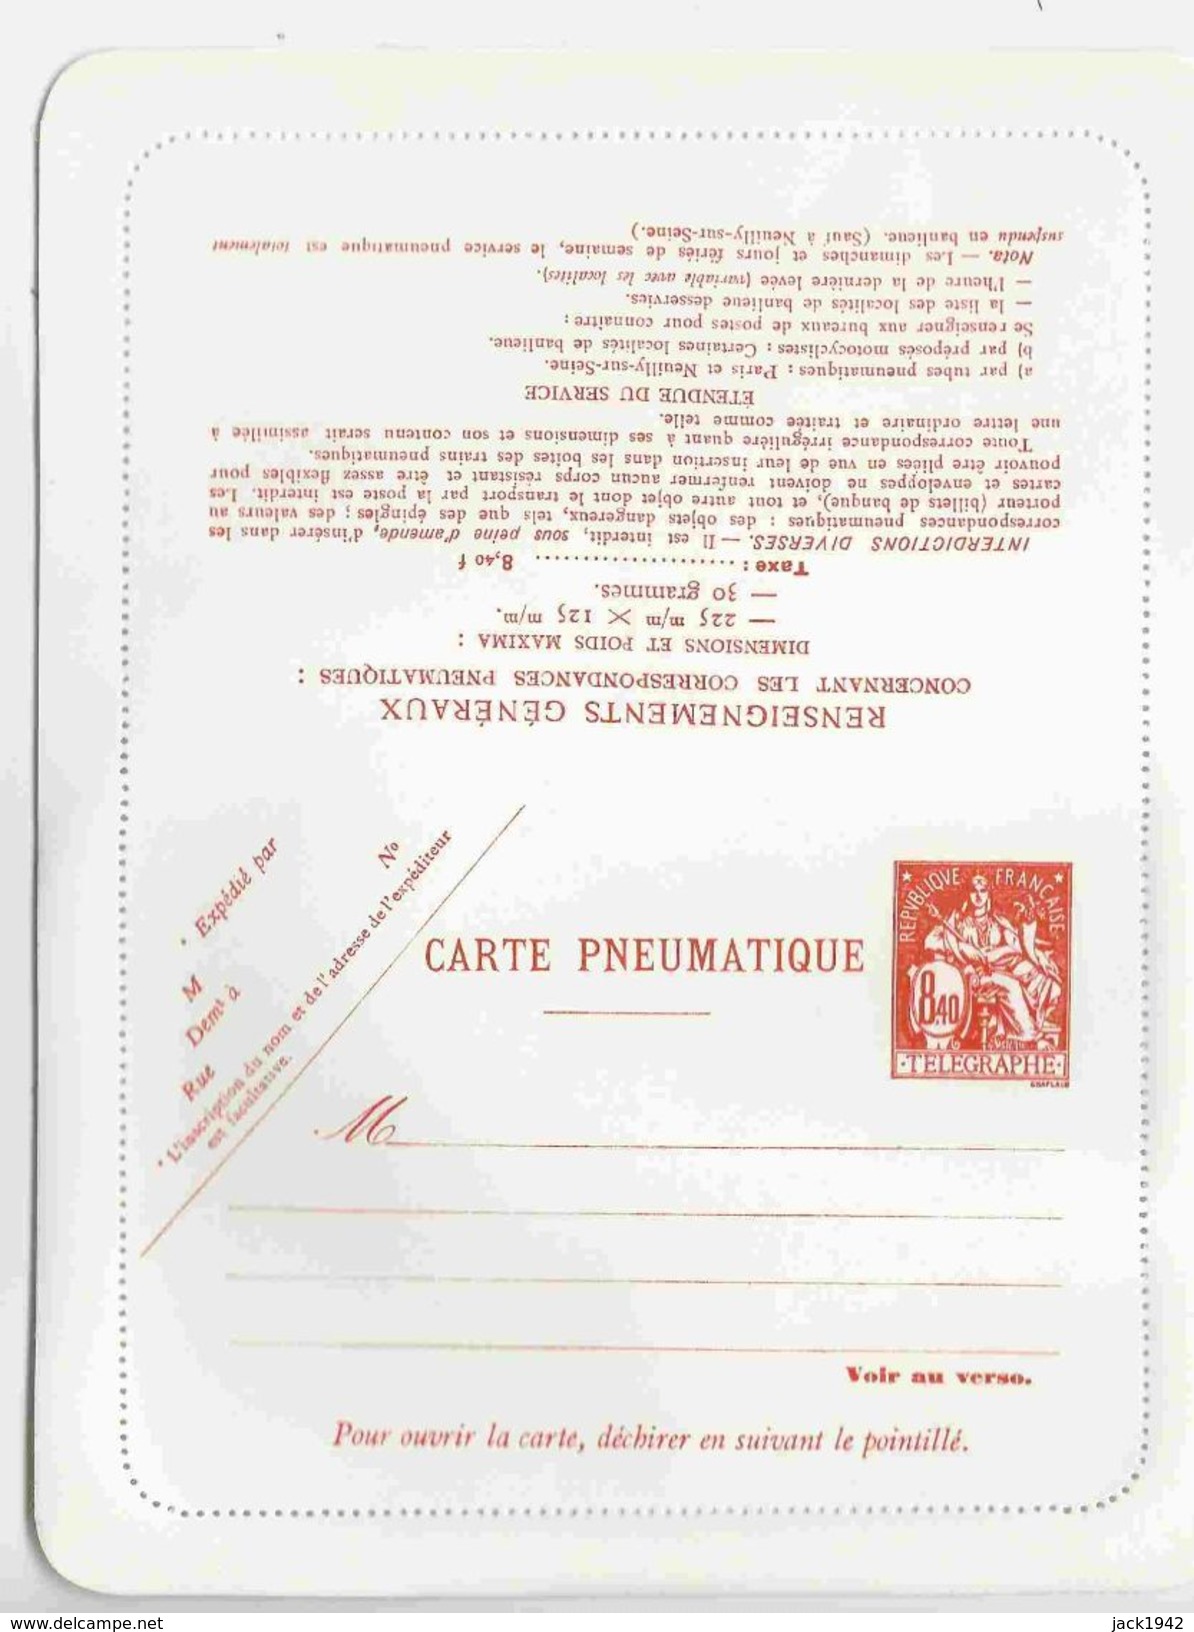 Carte-lettre Pneumatique Type Chaplain N°2623 CLPP 8f40 - Pneumatic Post